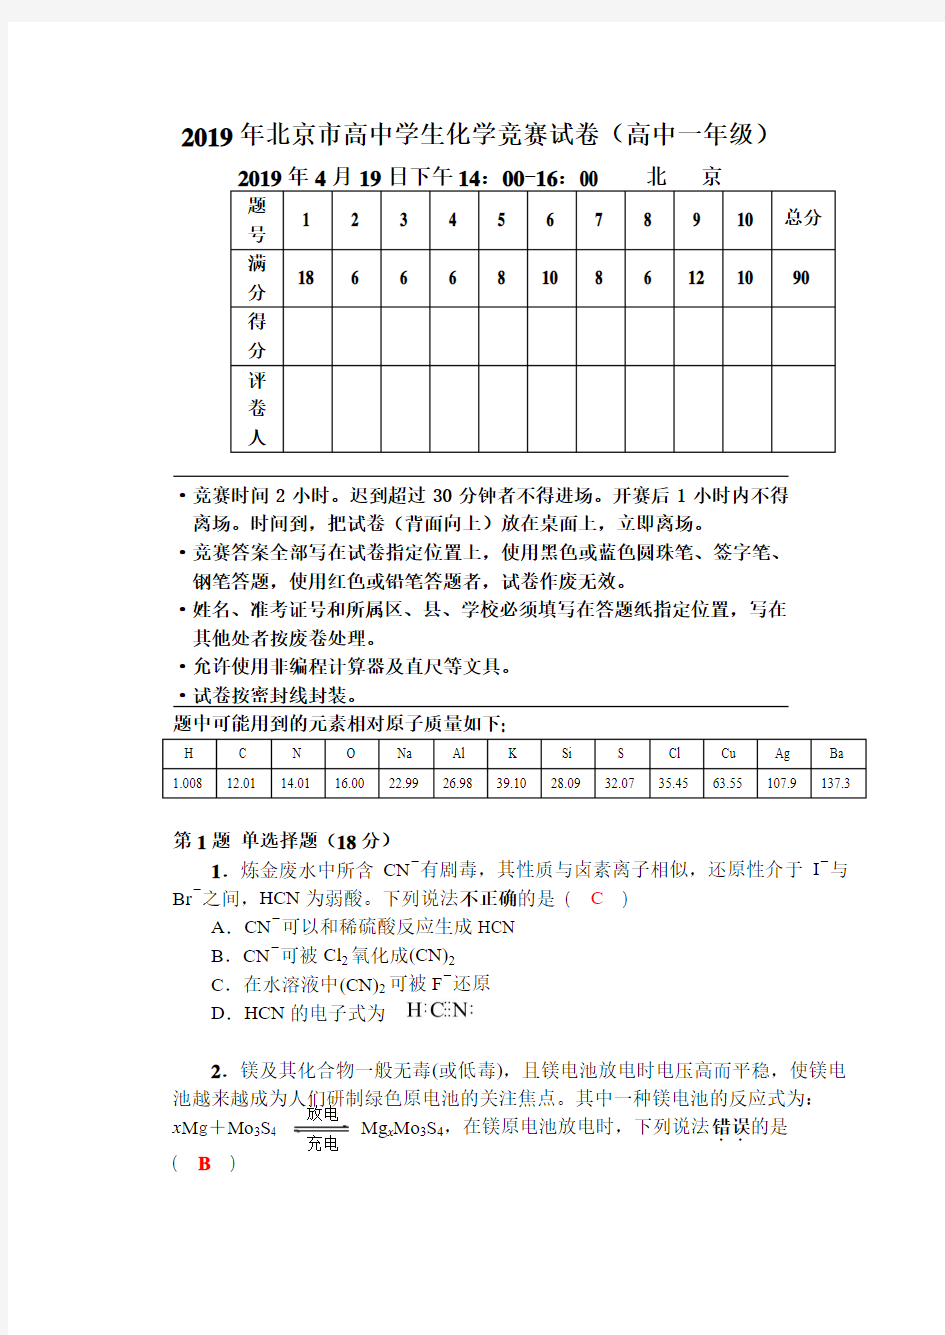 2019年北京市高中学生化学竞赛试卷(高中一年级)